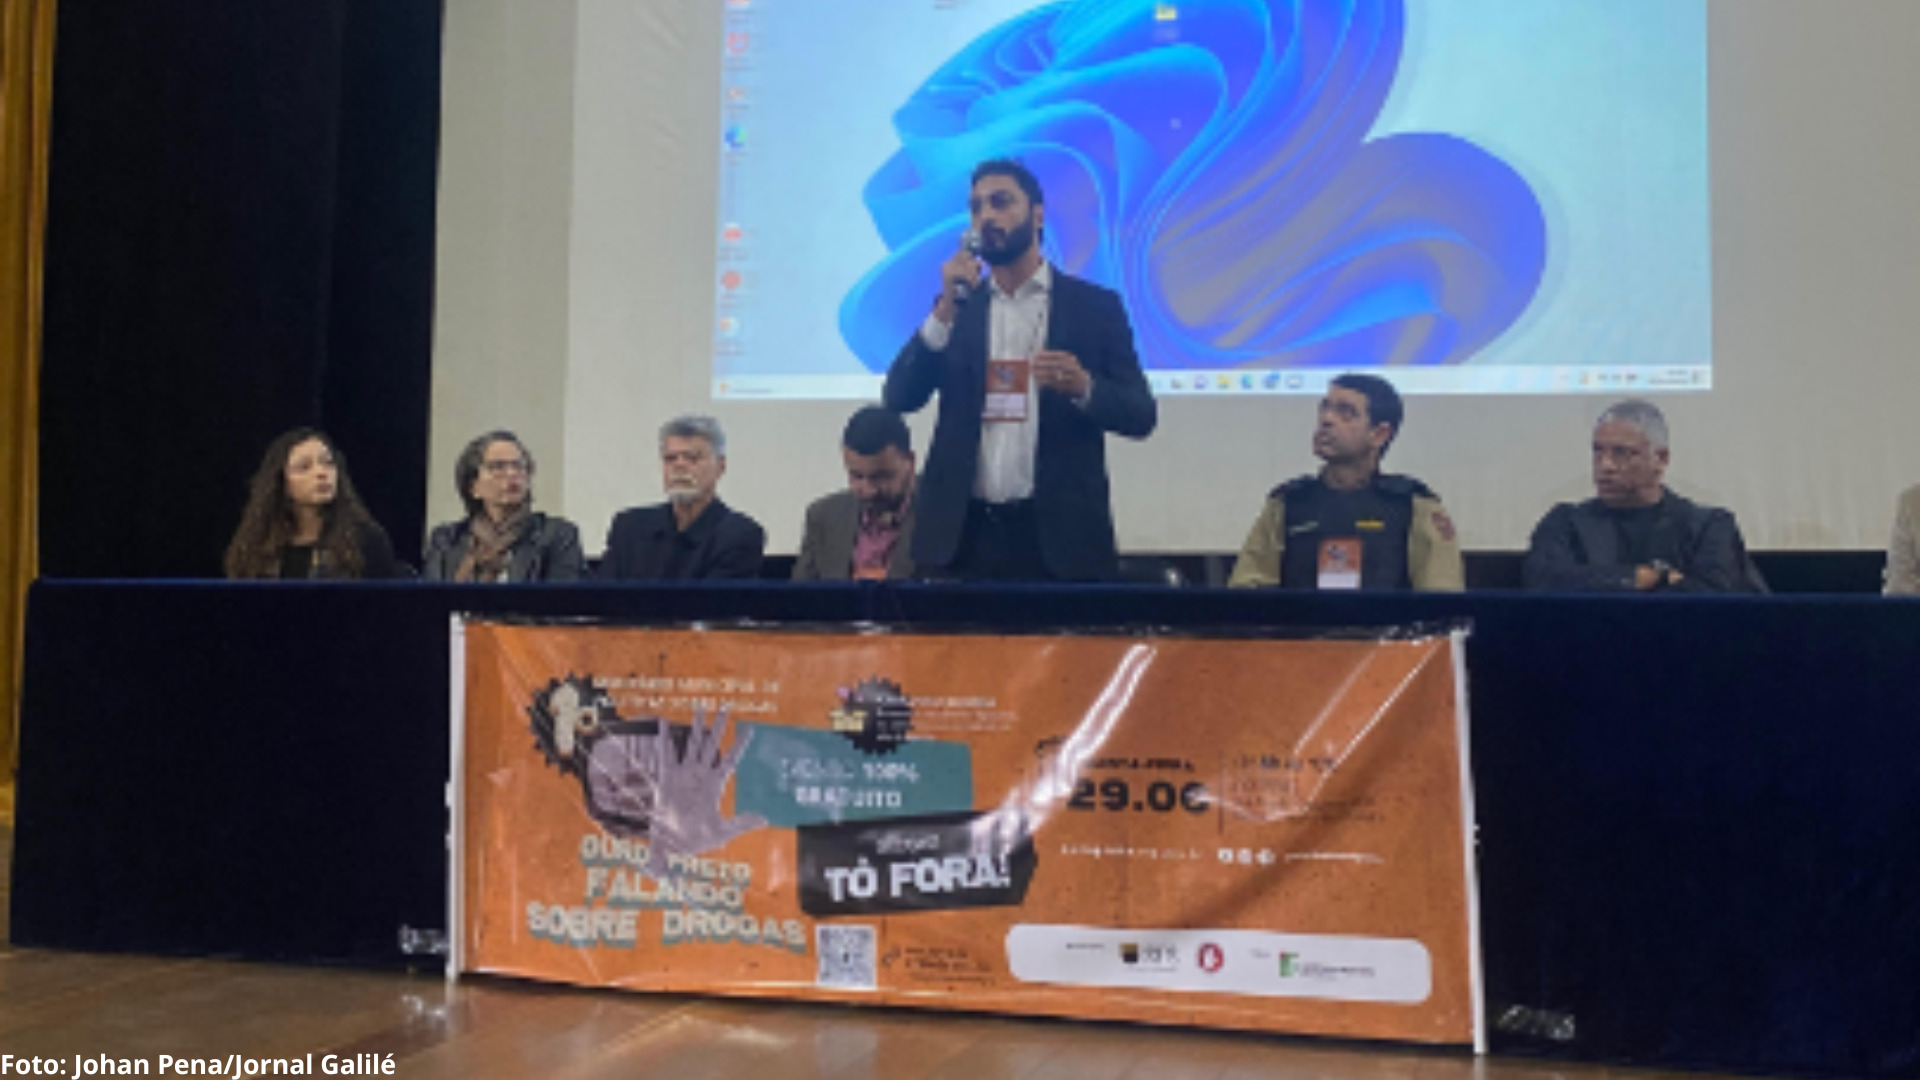 IFMG recebeu seminário "Ouro Preto falando sobre Drogas"